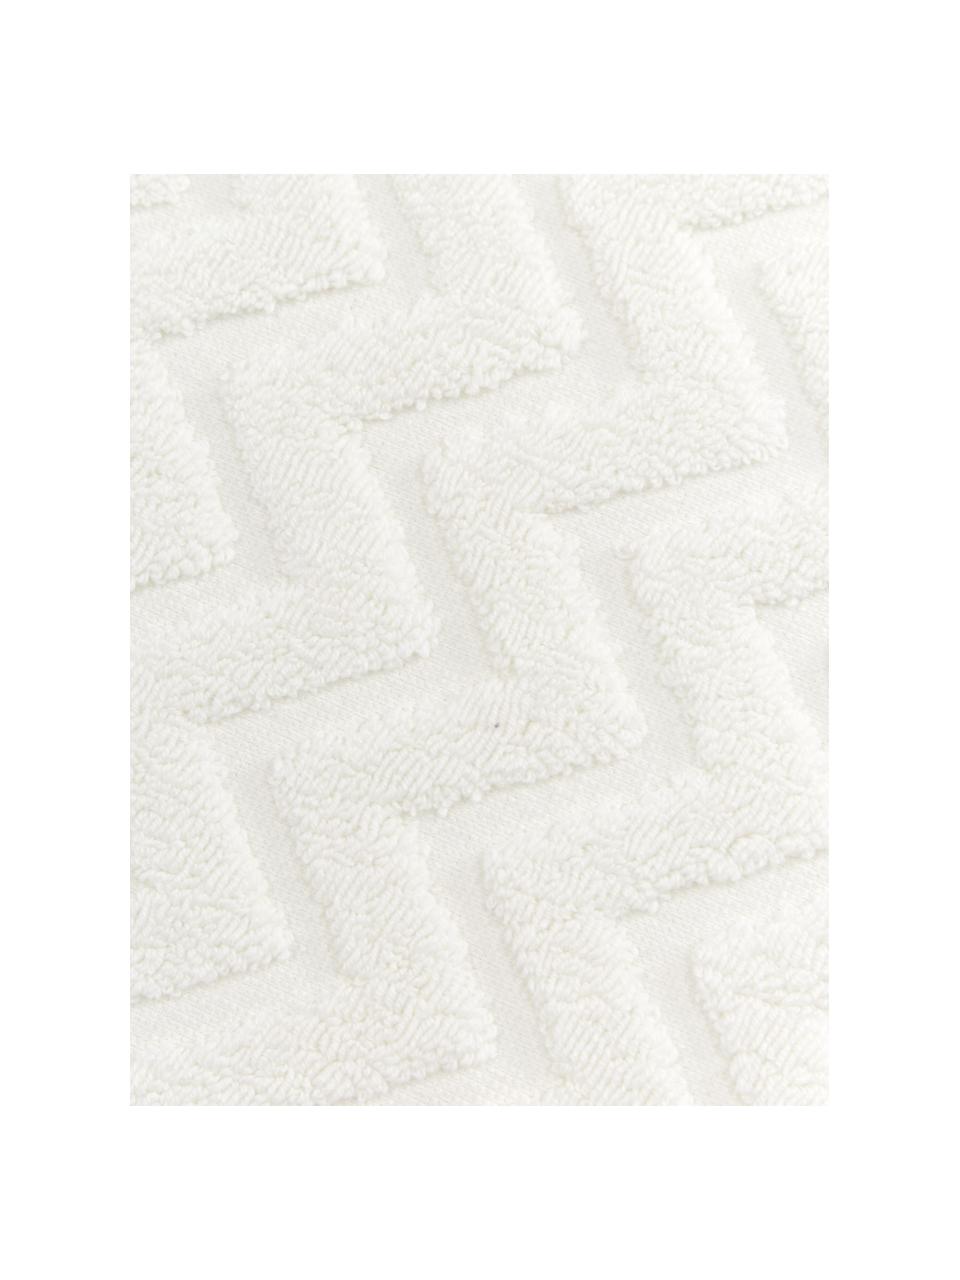 Handtuch Karma in verschiedenen Größen, mit Hoch-Tief-Muster, Weiß, Beige, Handtuch, B 50 x L 90 cm